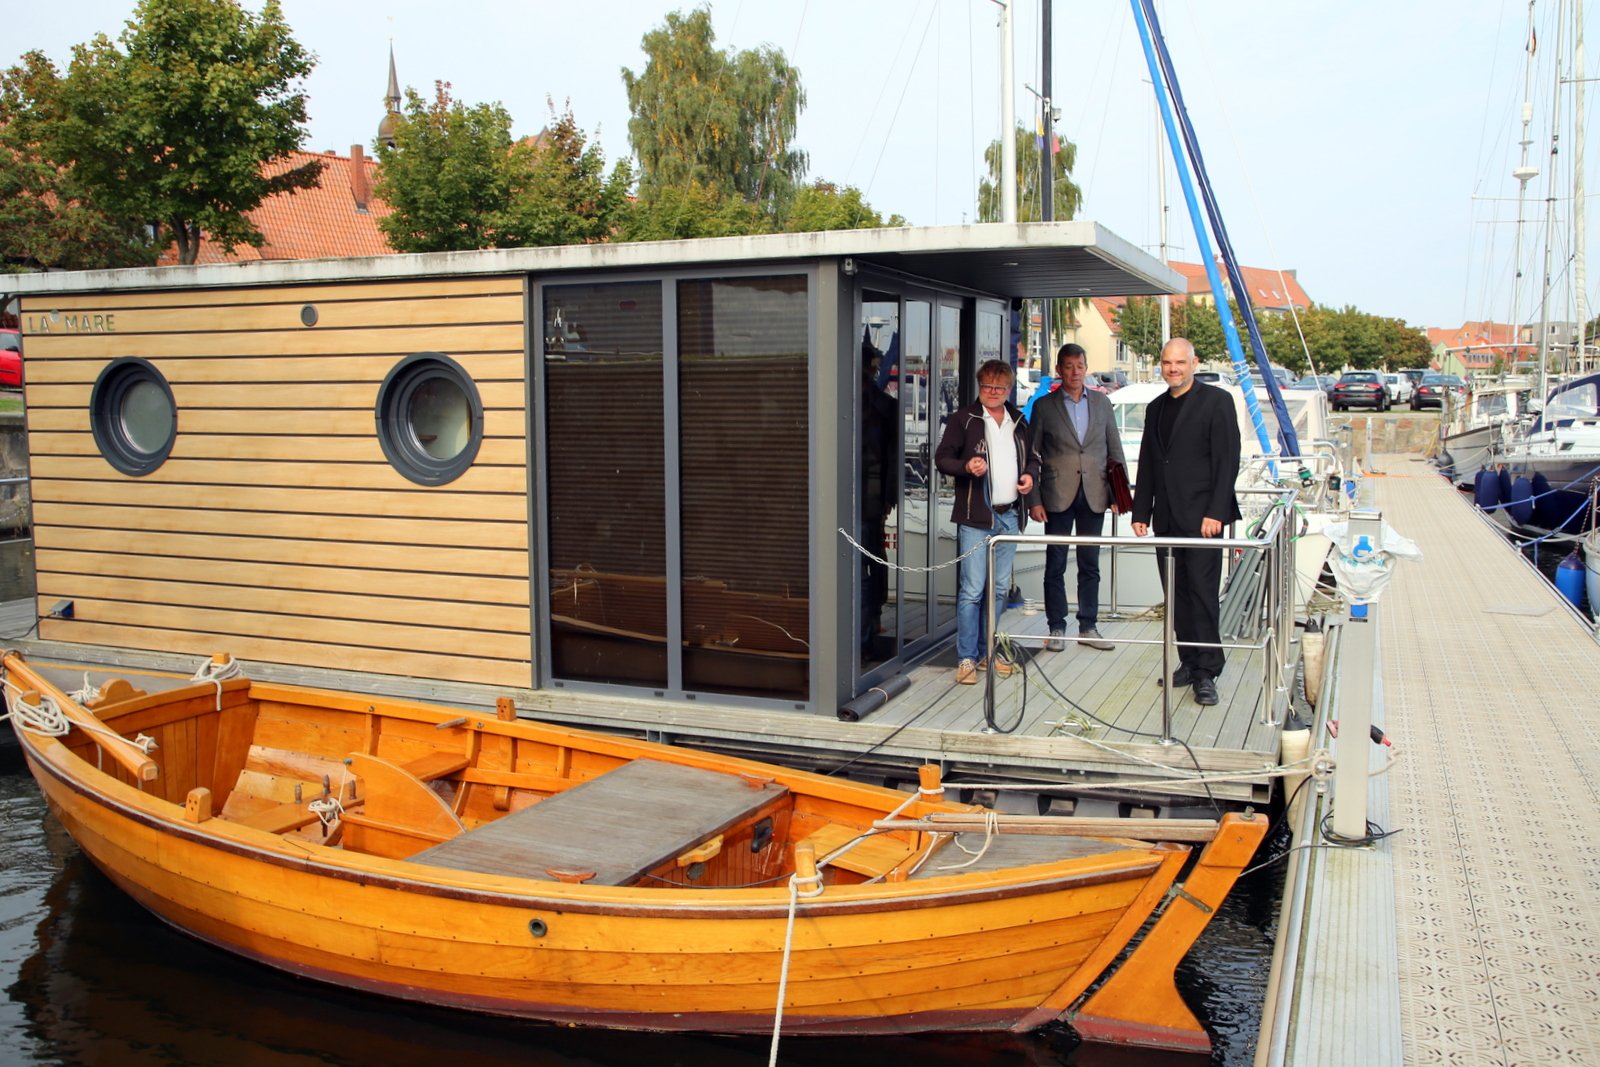 Direkt-neben-der-Pommern-Jolle-liegt-das-kleine-Hausboot-zur-Besichtigung.JPG